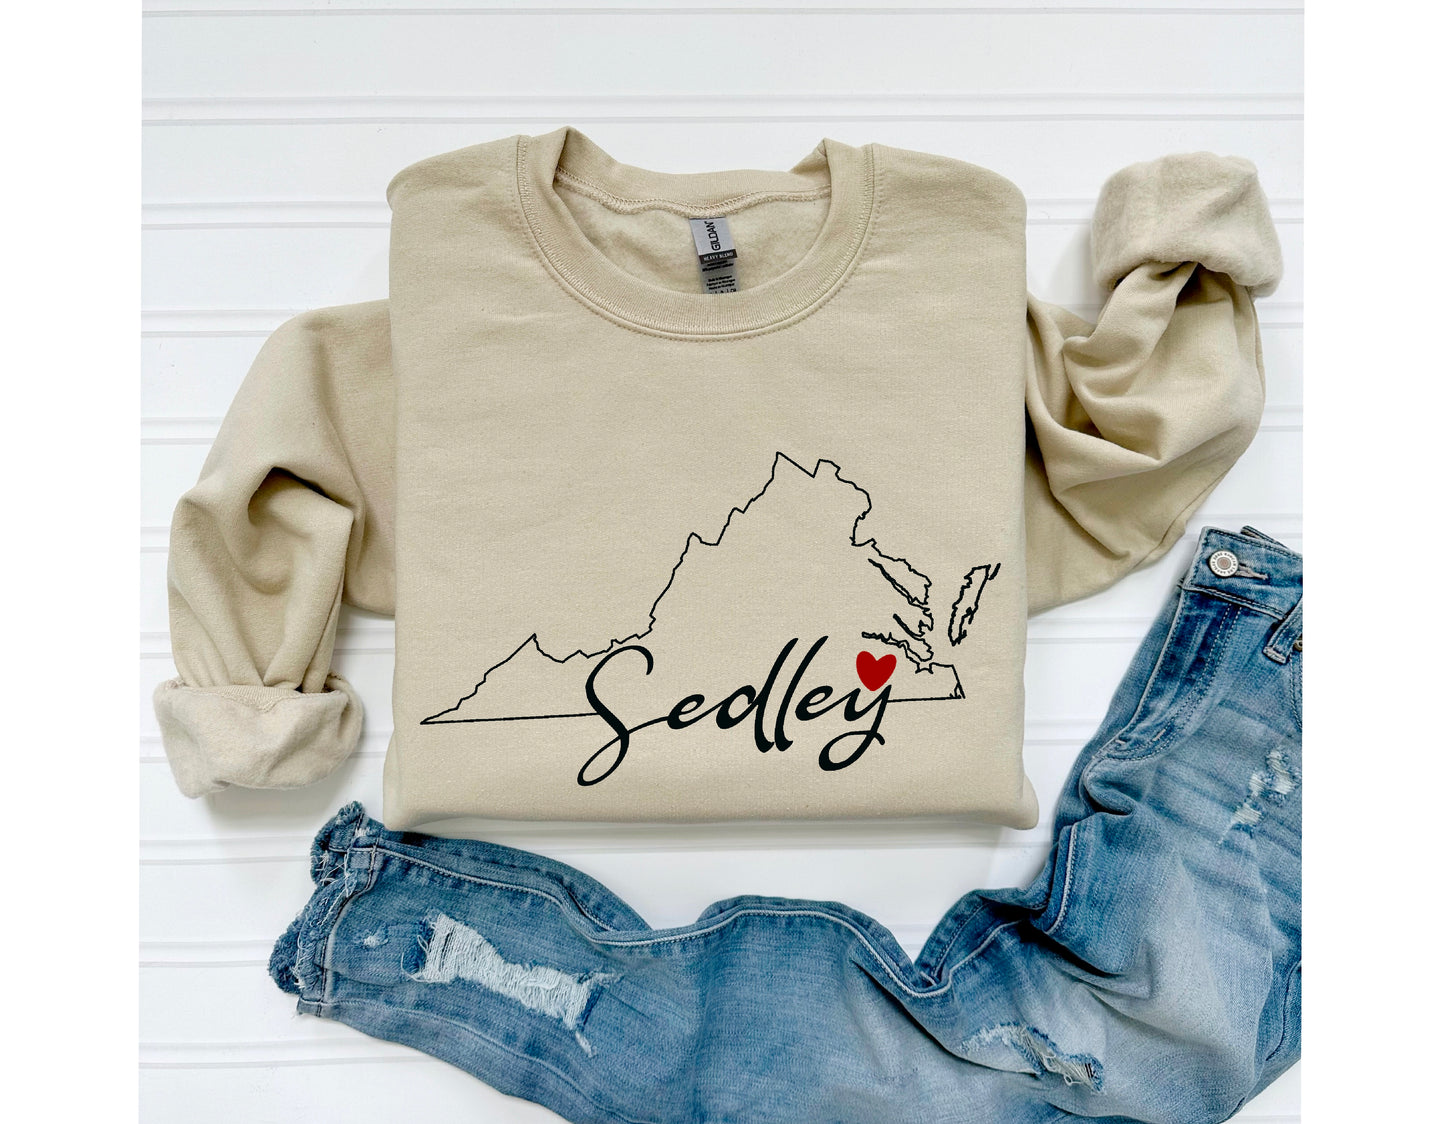 Sedley, Virginia Hometown